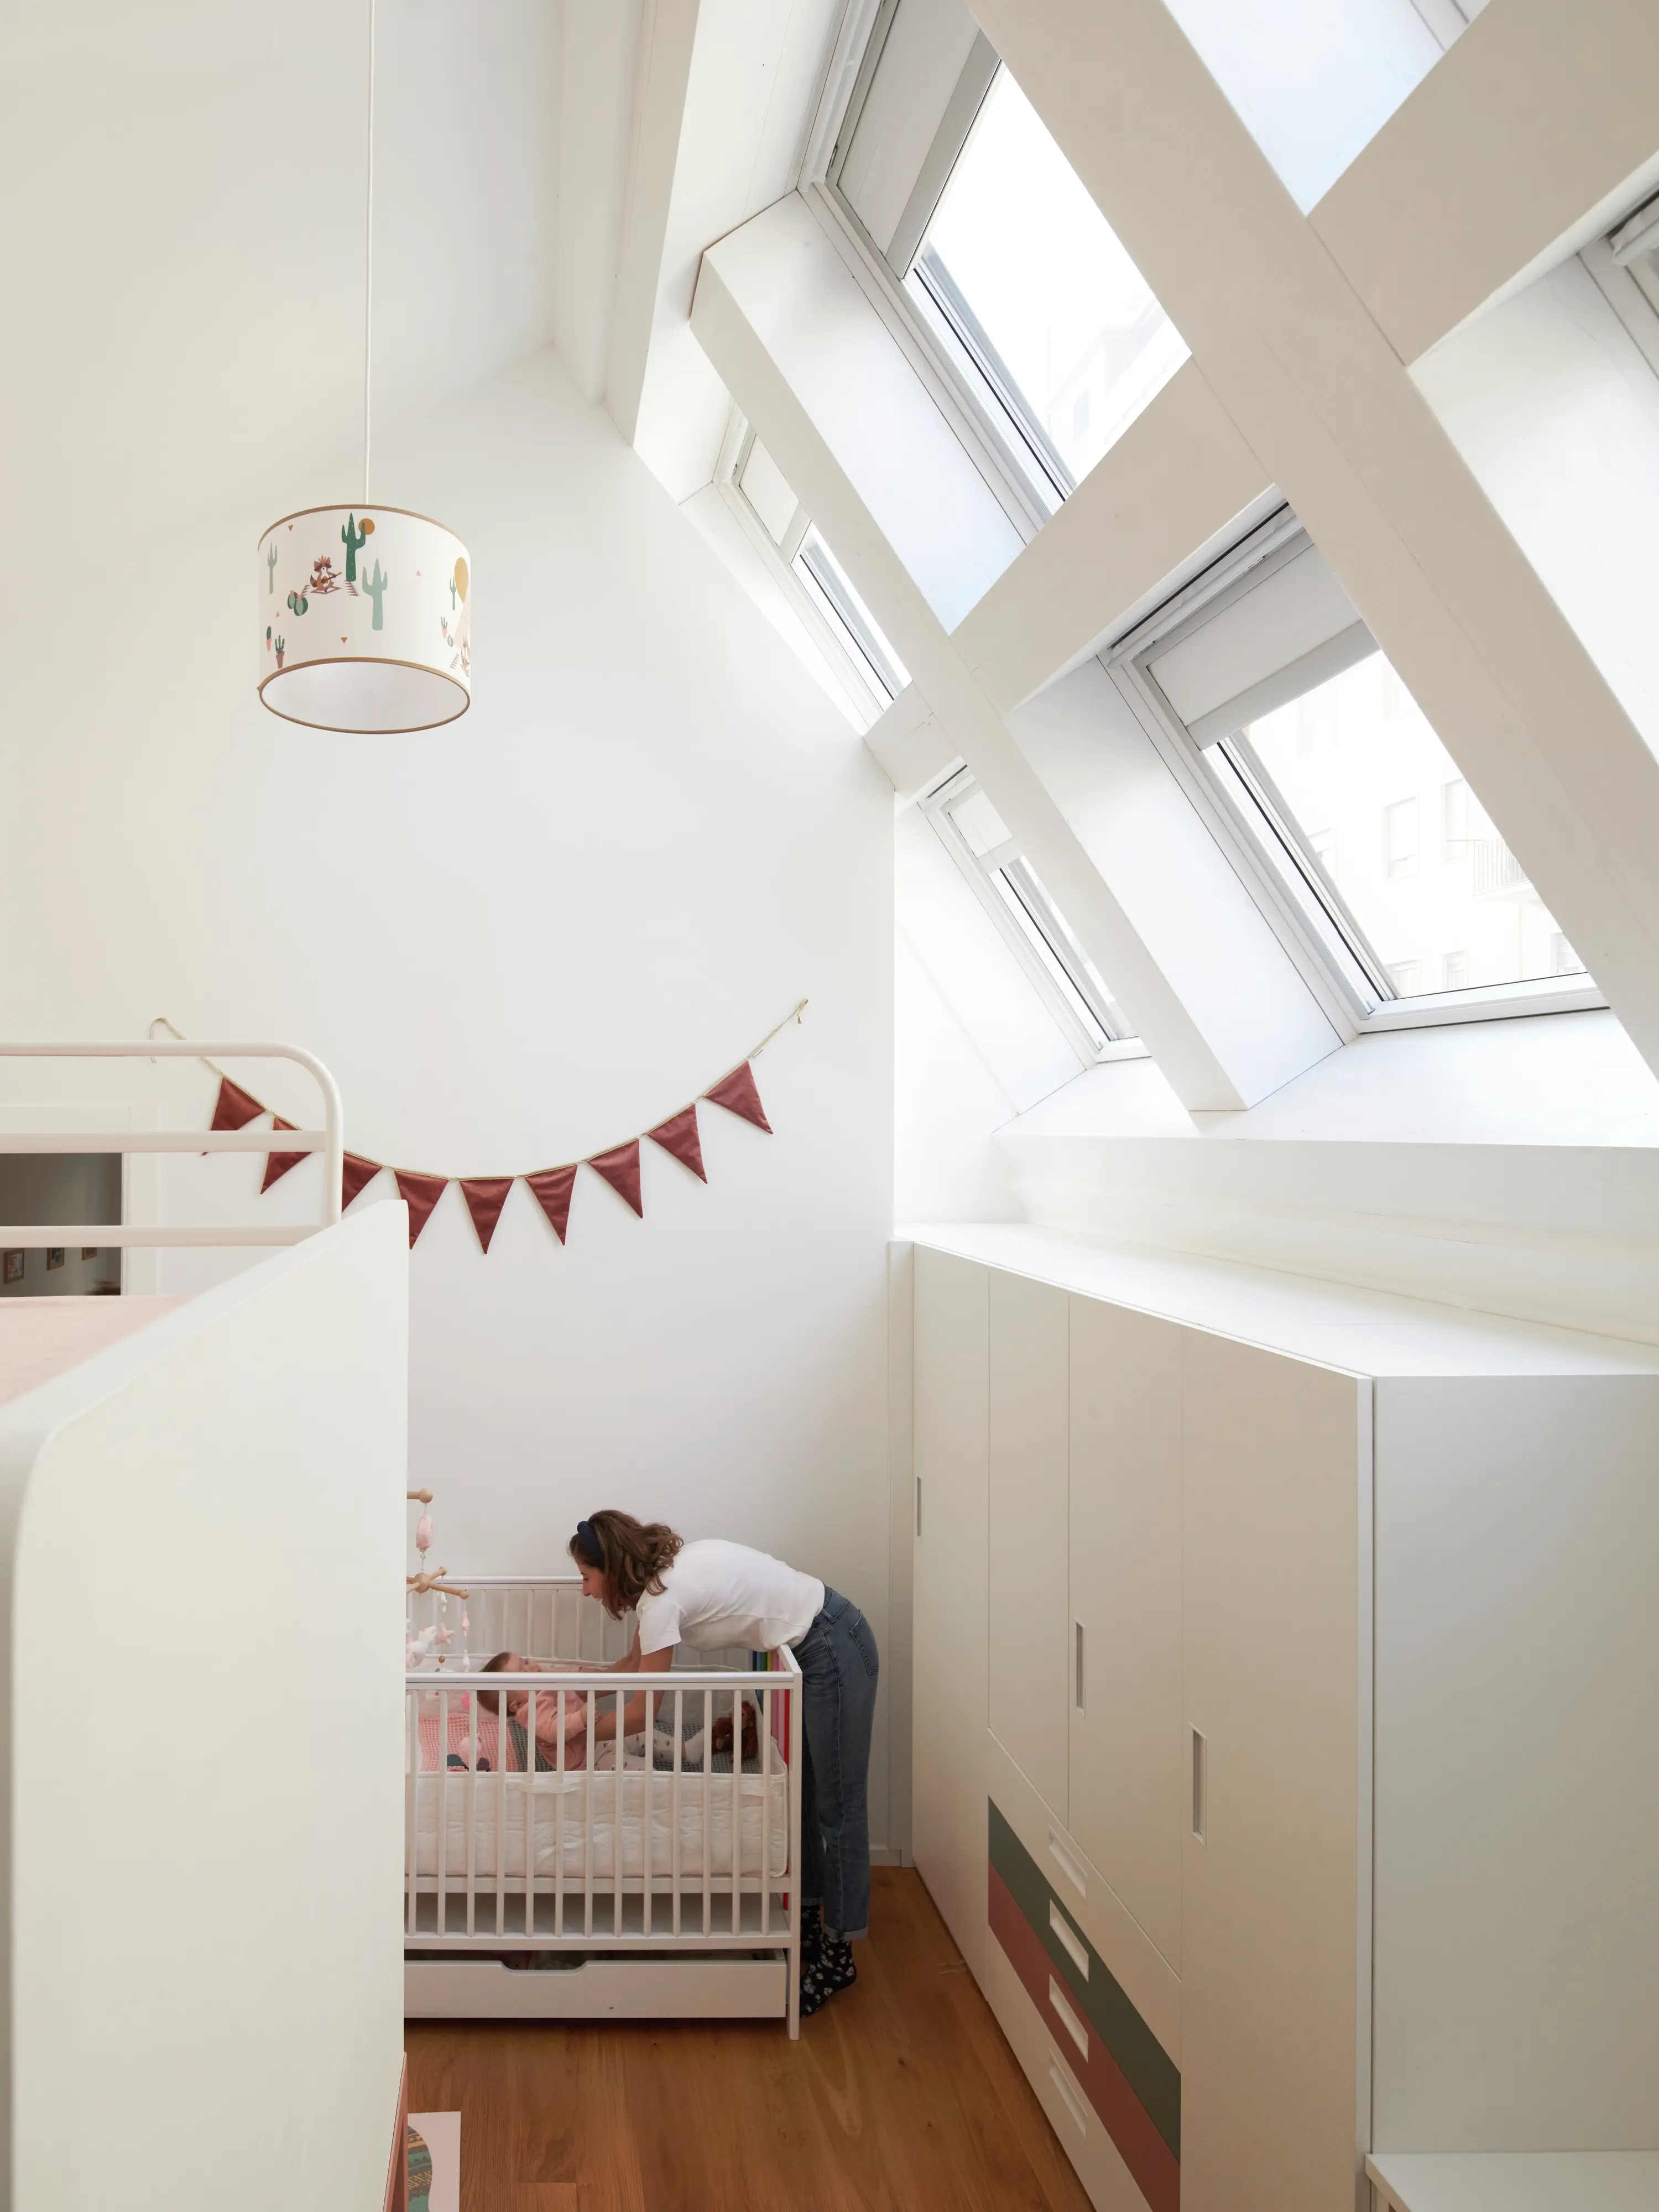 Accogliente camera per bambini in mansarda con luce naturale proveniente dalle finestre per tetti VELUX, culla e spazio di archiviazione.